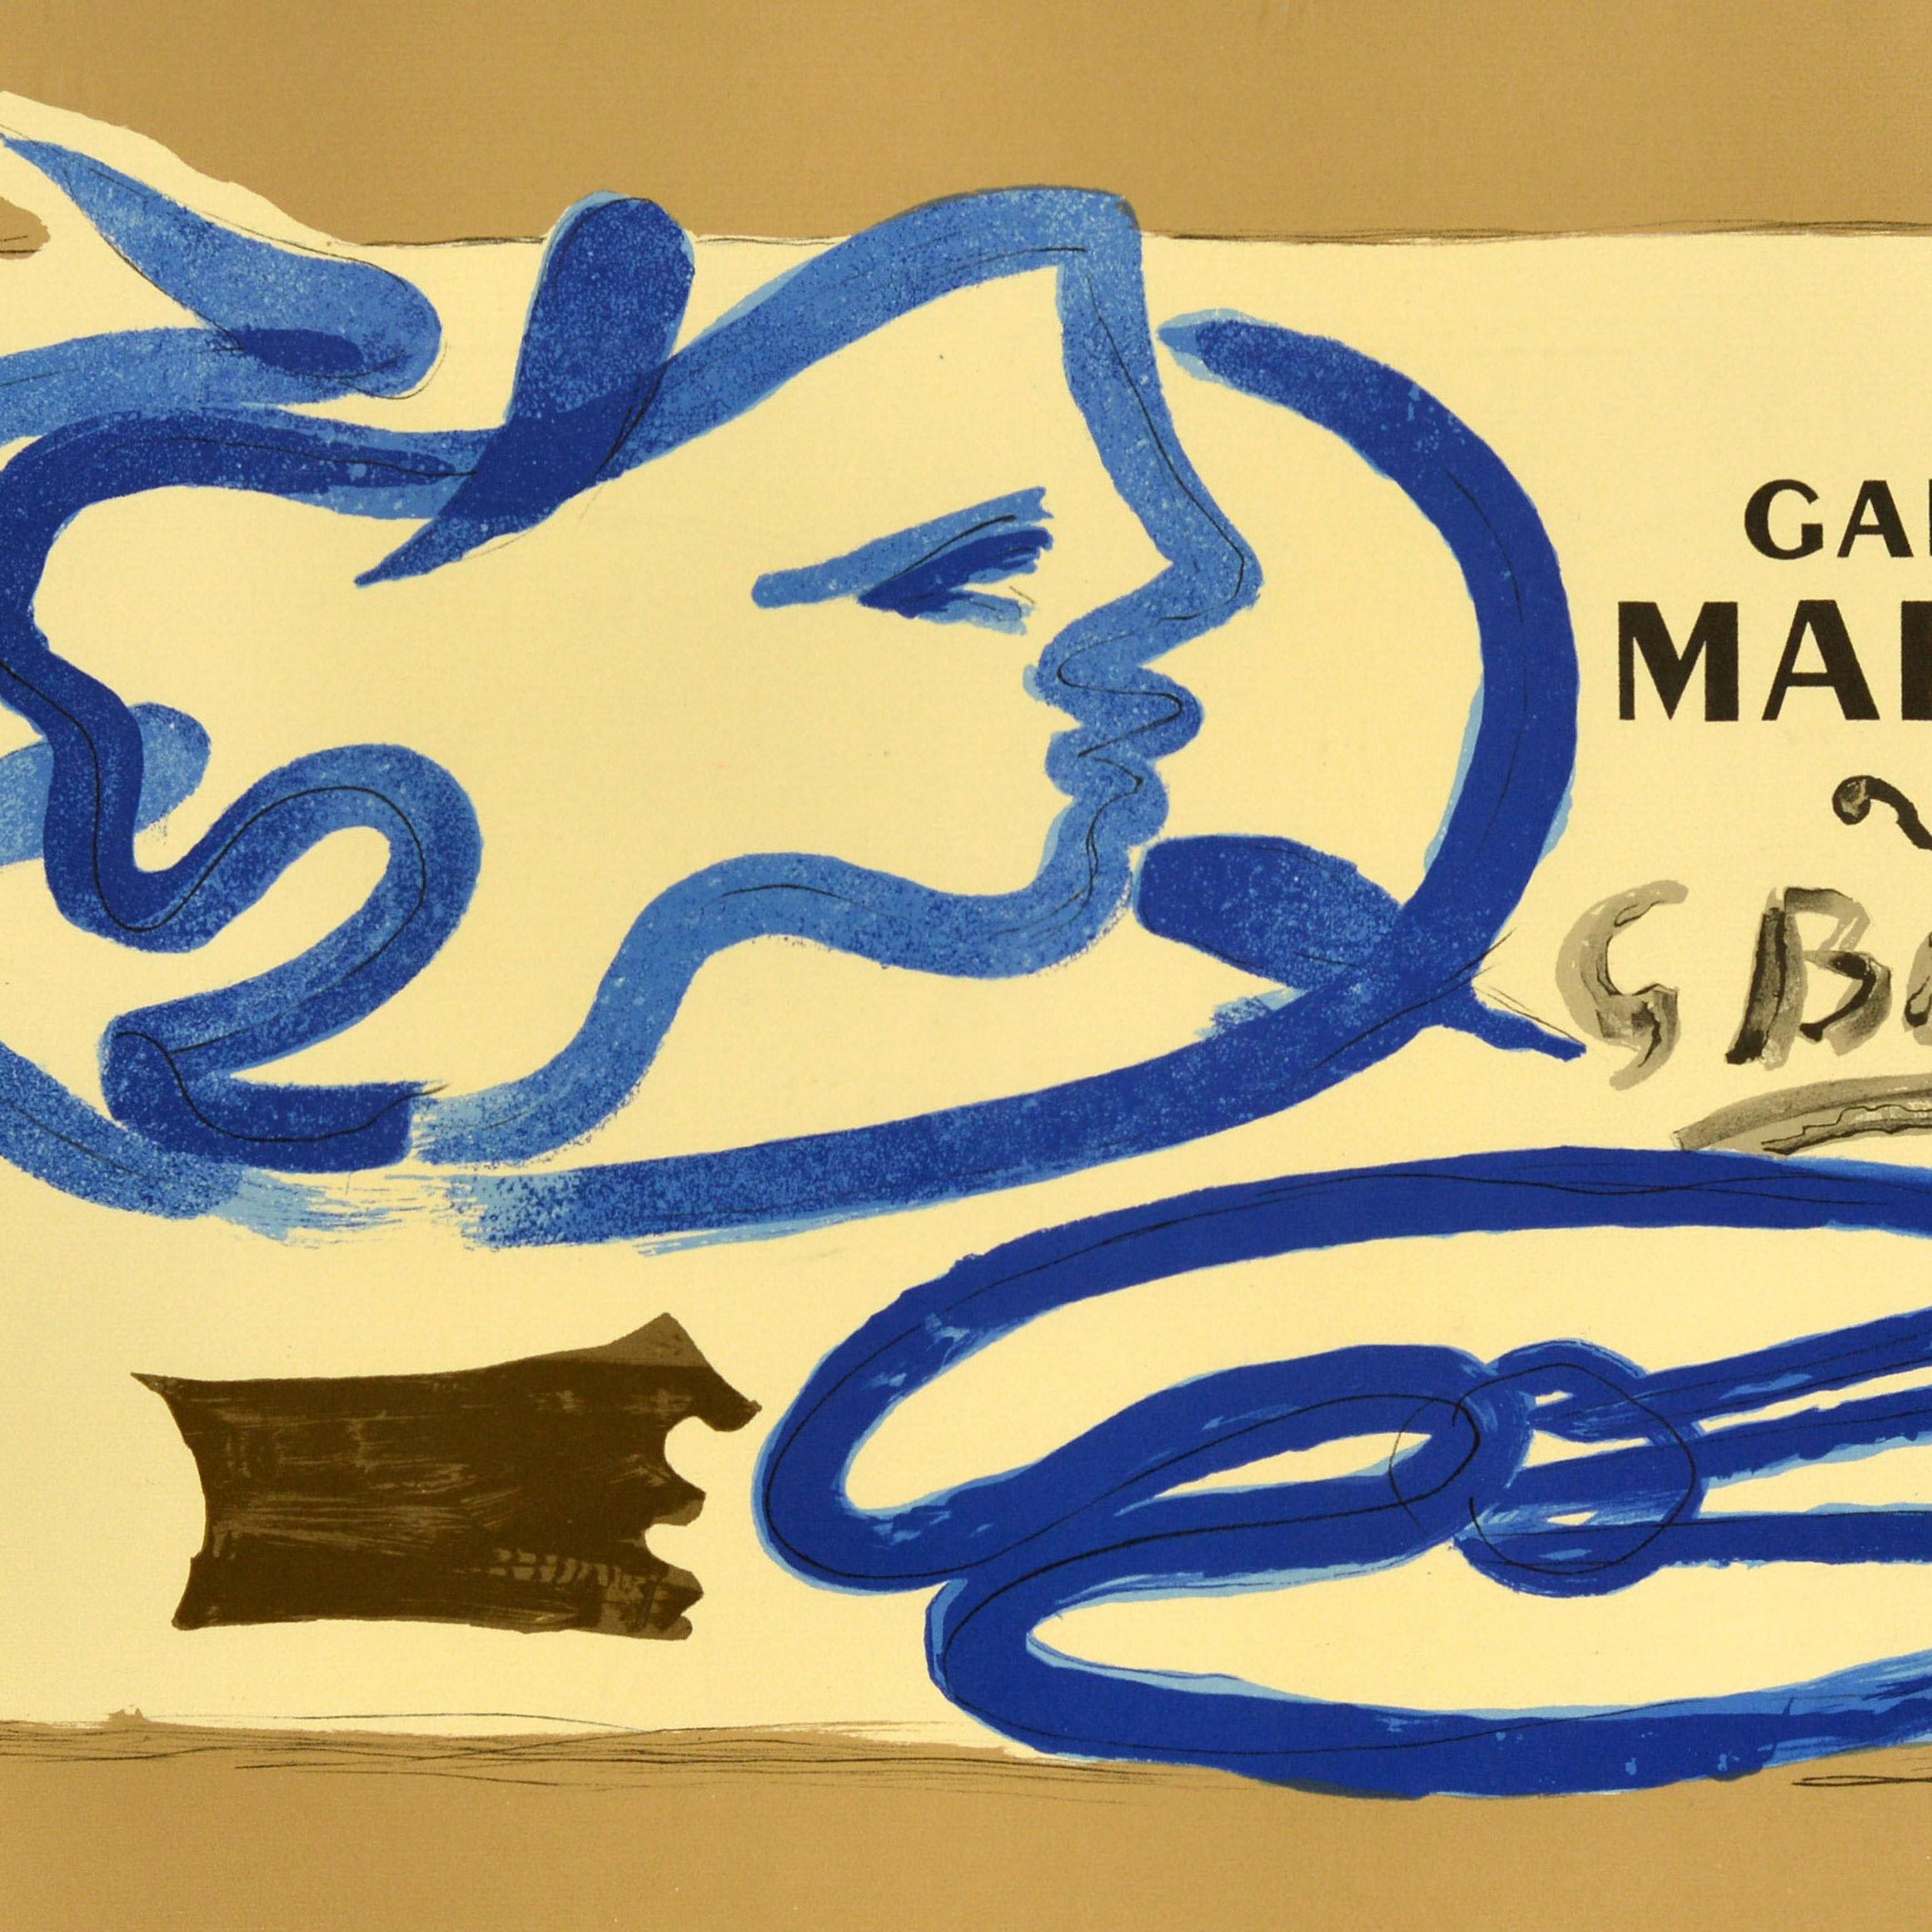 Affiche publicitaire originale d'époque pour une exposition d'œuvres de l'artiste français Georges Braque (1882-1963) à la Galerie Maeght, présentant un dessin abstrait intitulé Profil a la Palette / Palette Profile représentant la silhouette d'une